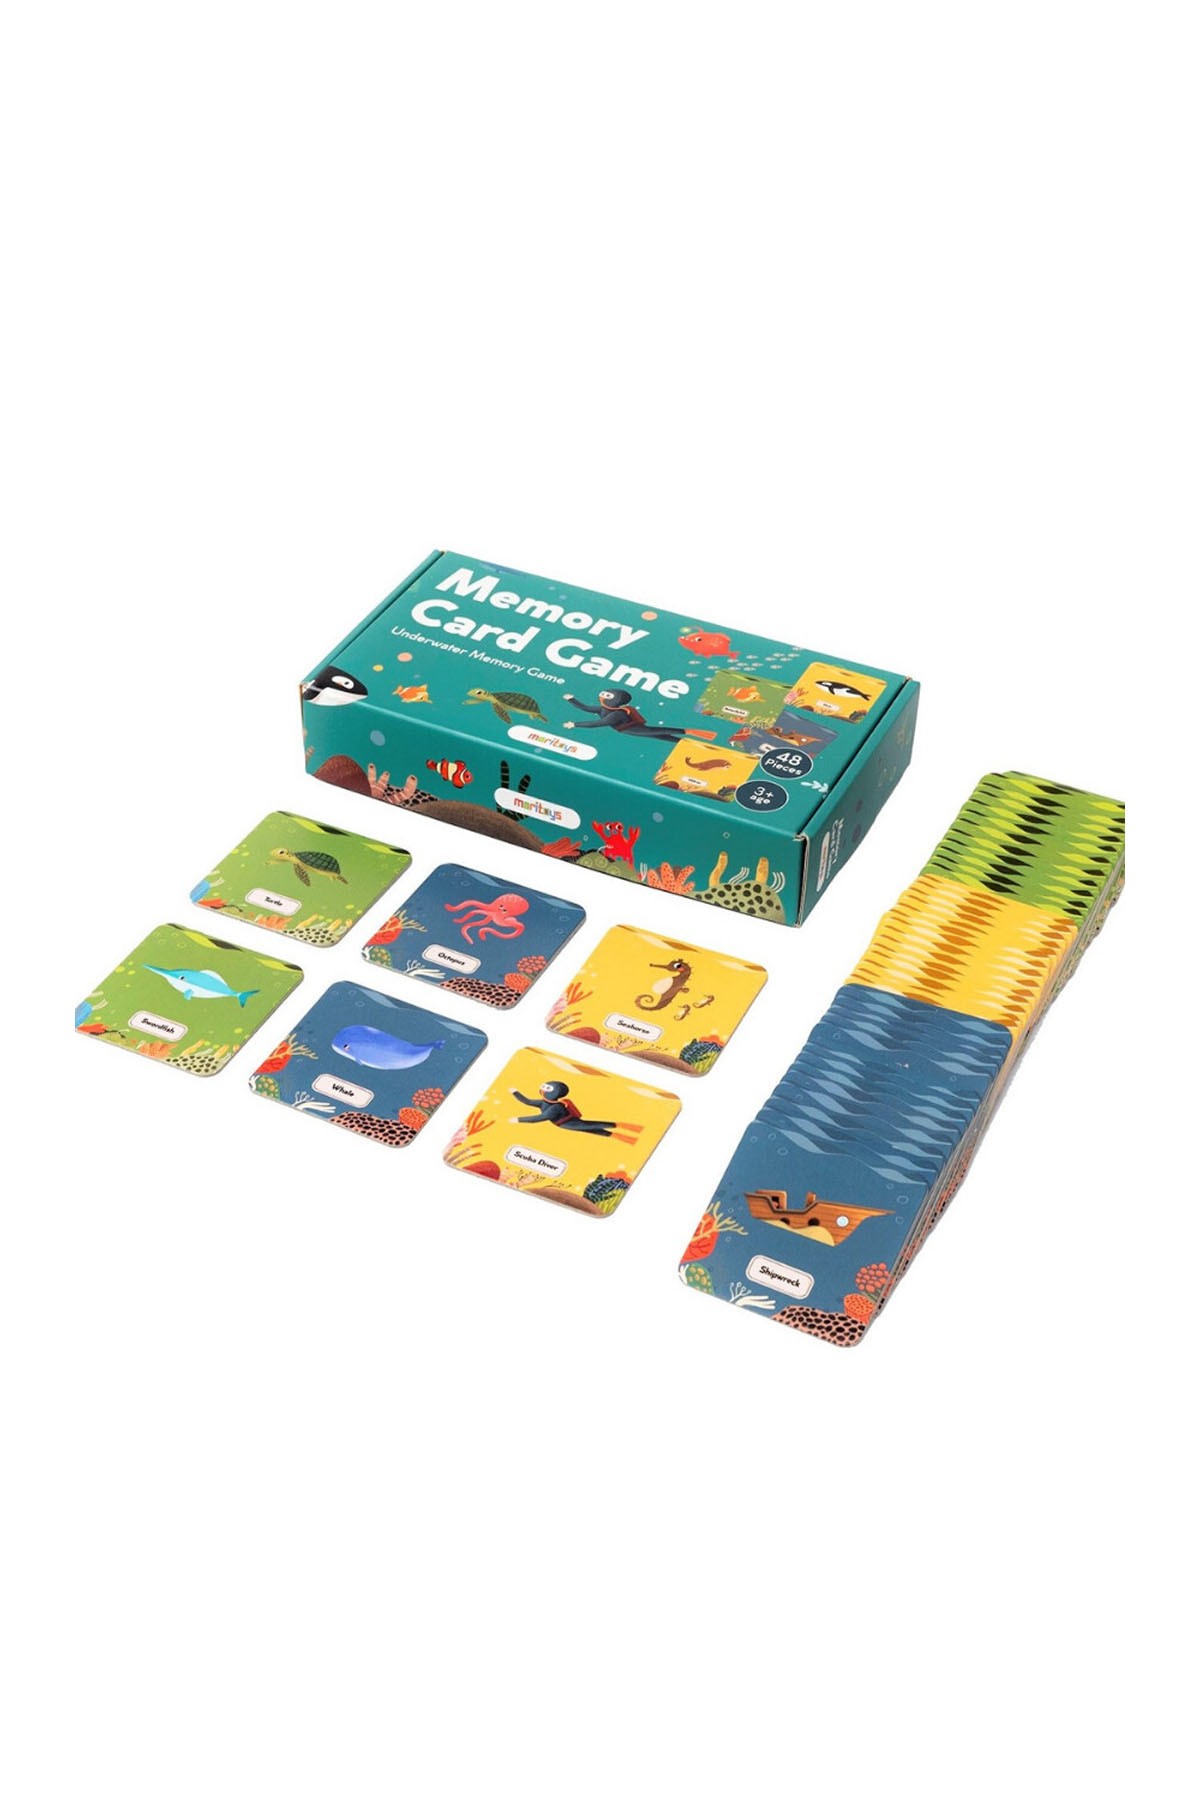 Moritoys Memory Card Game 48 Kartlı Hafıza ve Eşleştirme Oyunu